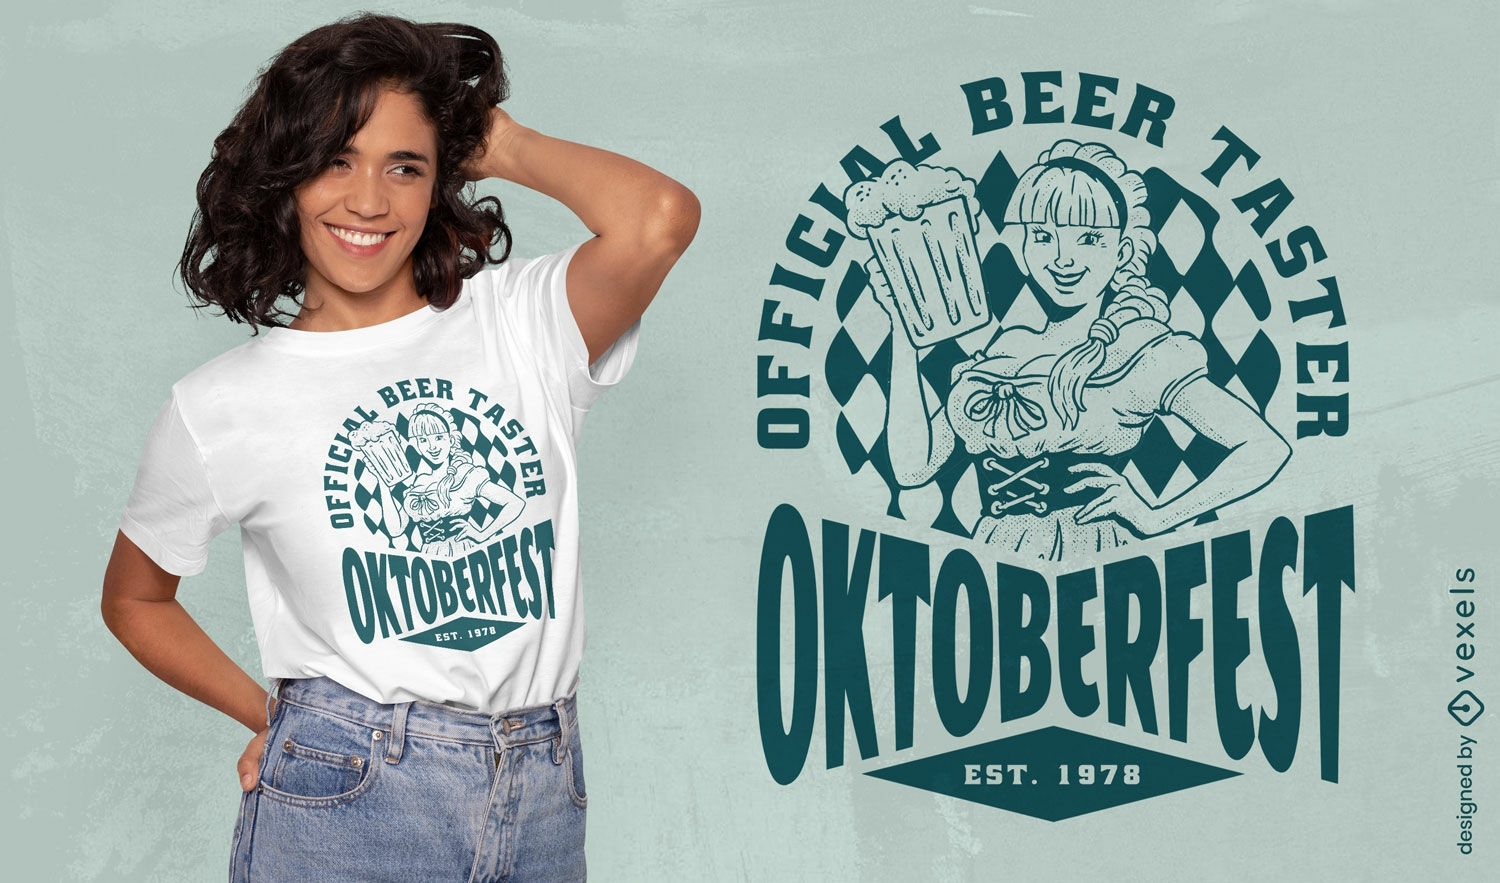 Dise?o de camiseta de mujer Oktoberfest de catador de cerveza.